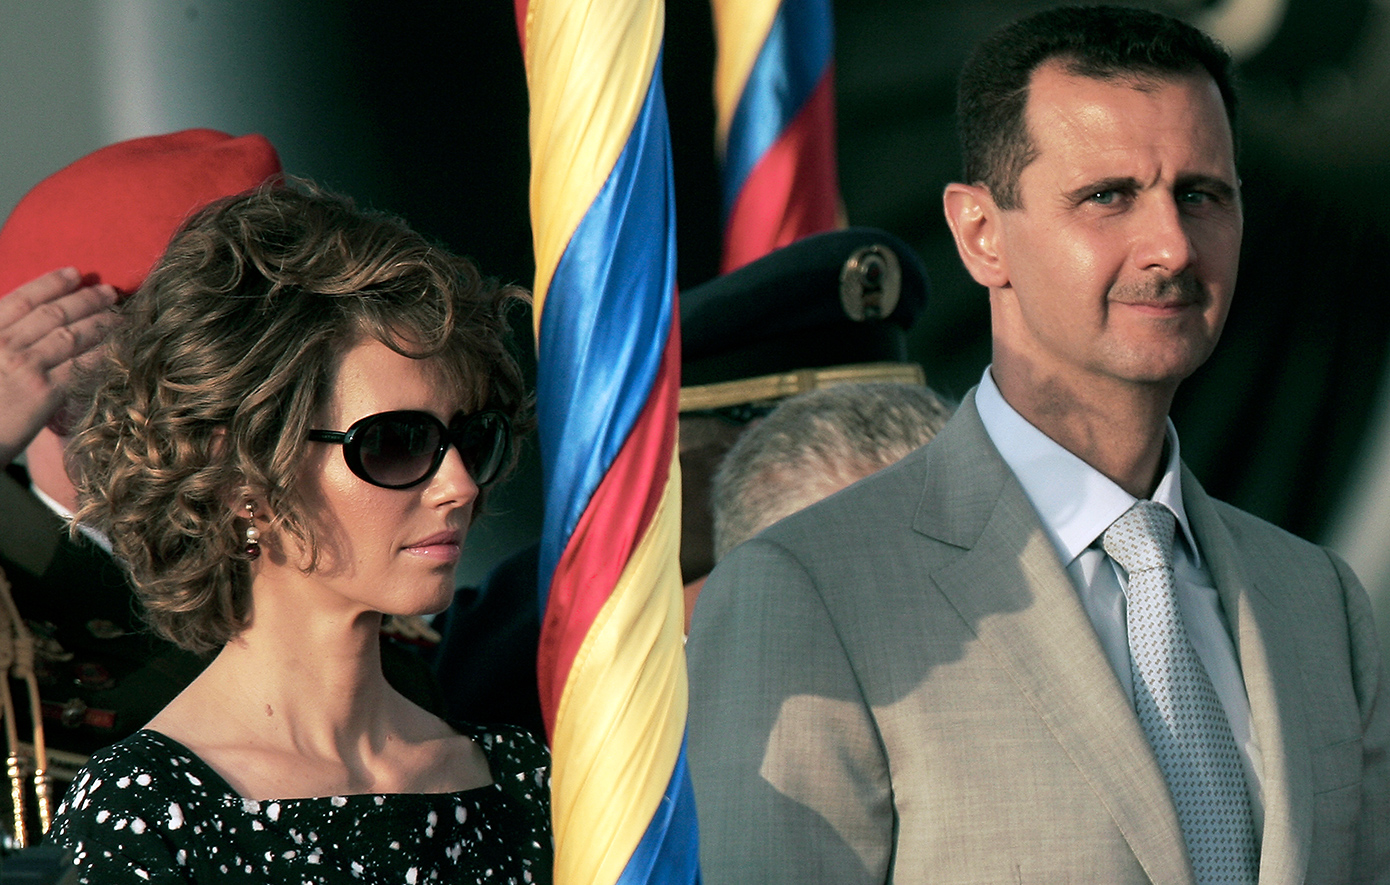 Η σύζυγος του Σύρου προέδρου, Άσμα αλ-Άσαντ, διαγνώστηκε με λευχαιμία